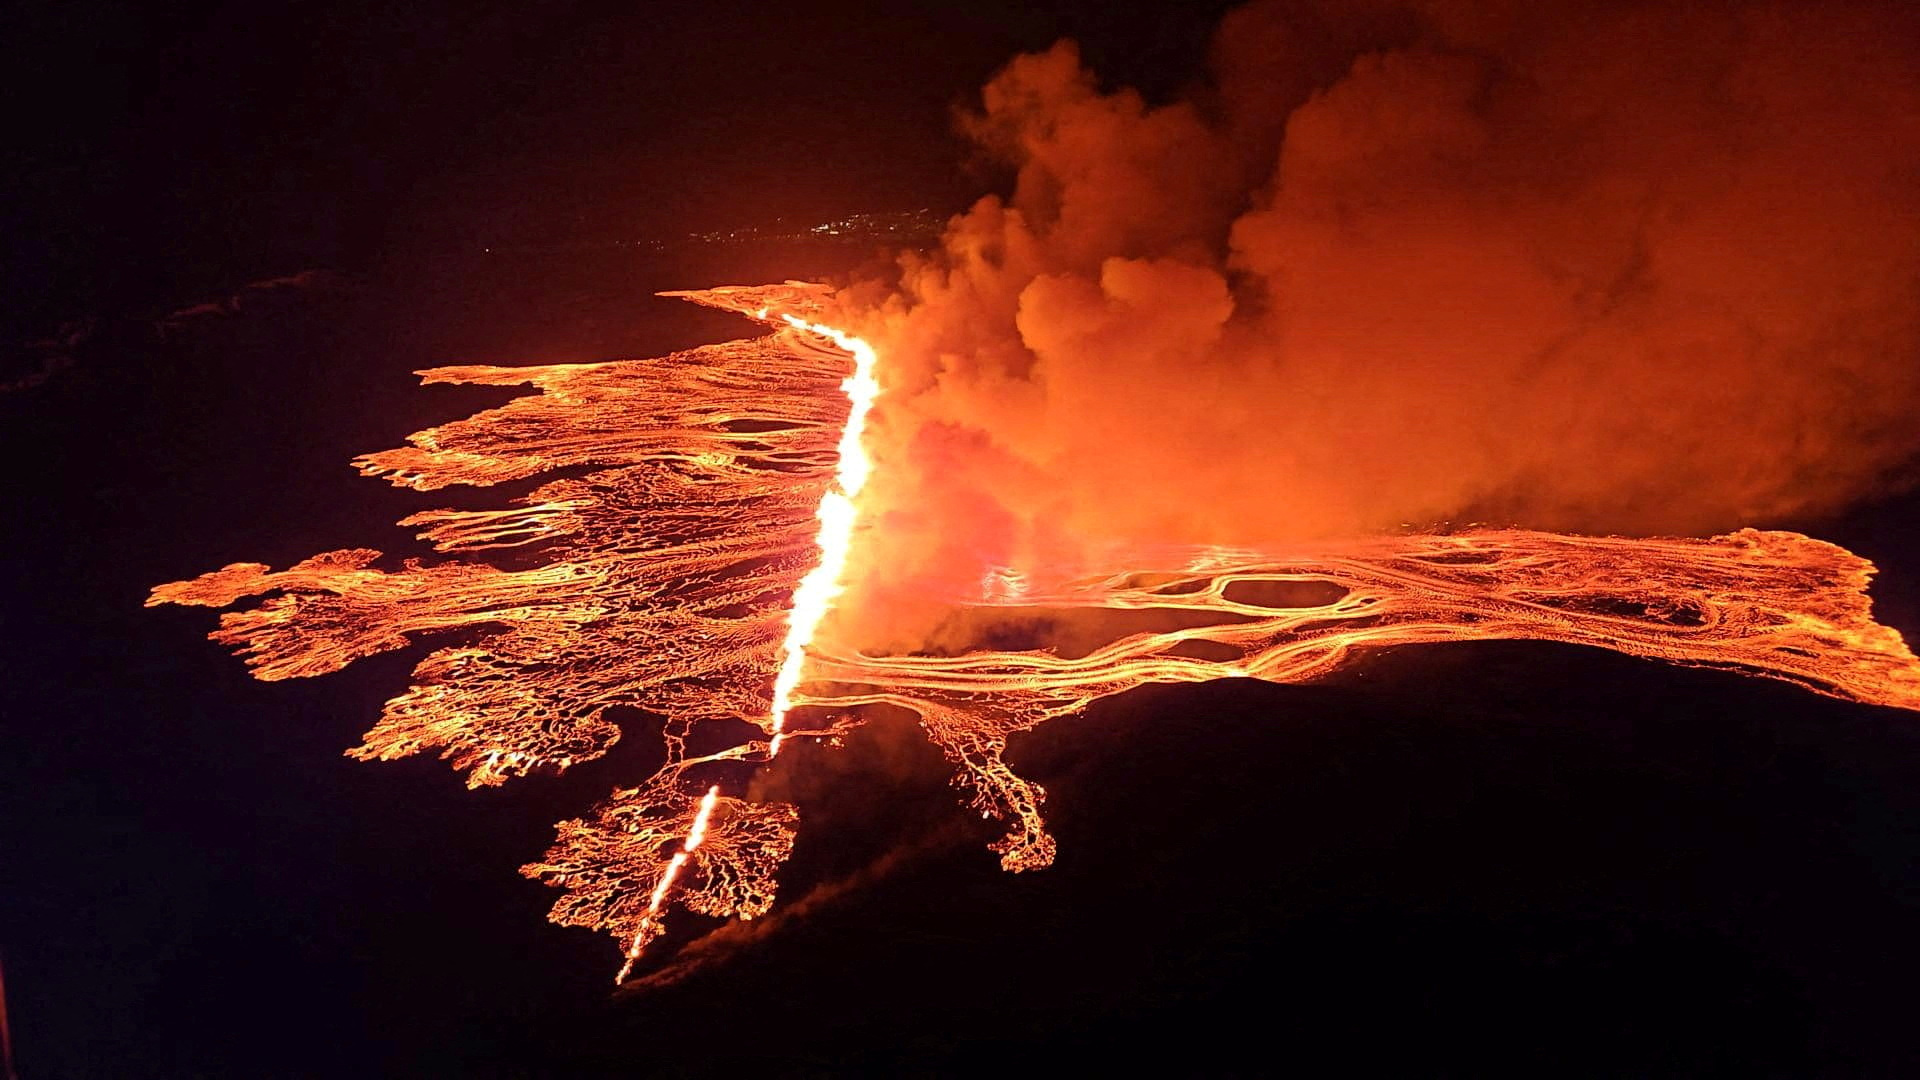 冰岛4个月内4度火山喷发  名胜蓝潟湖暂关